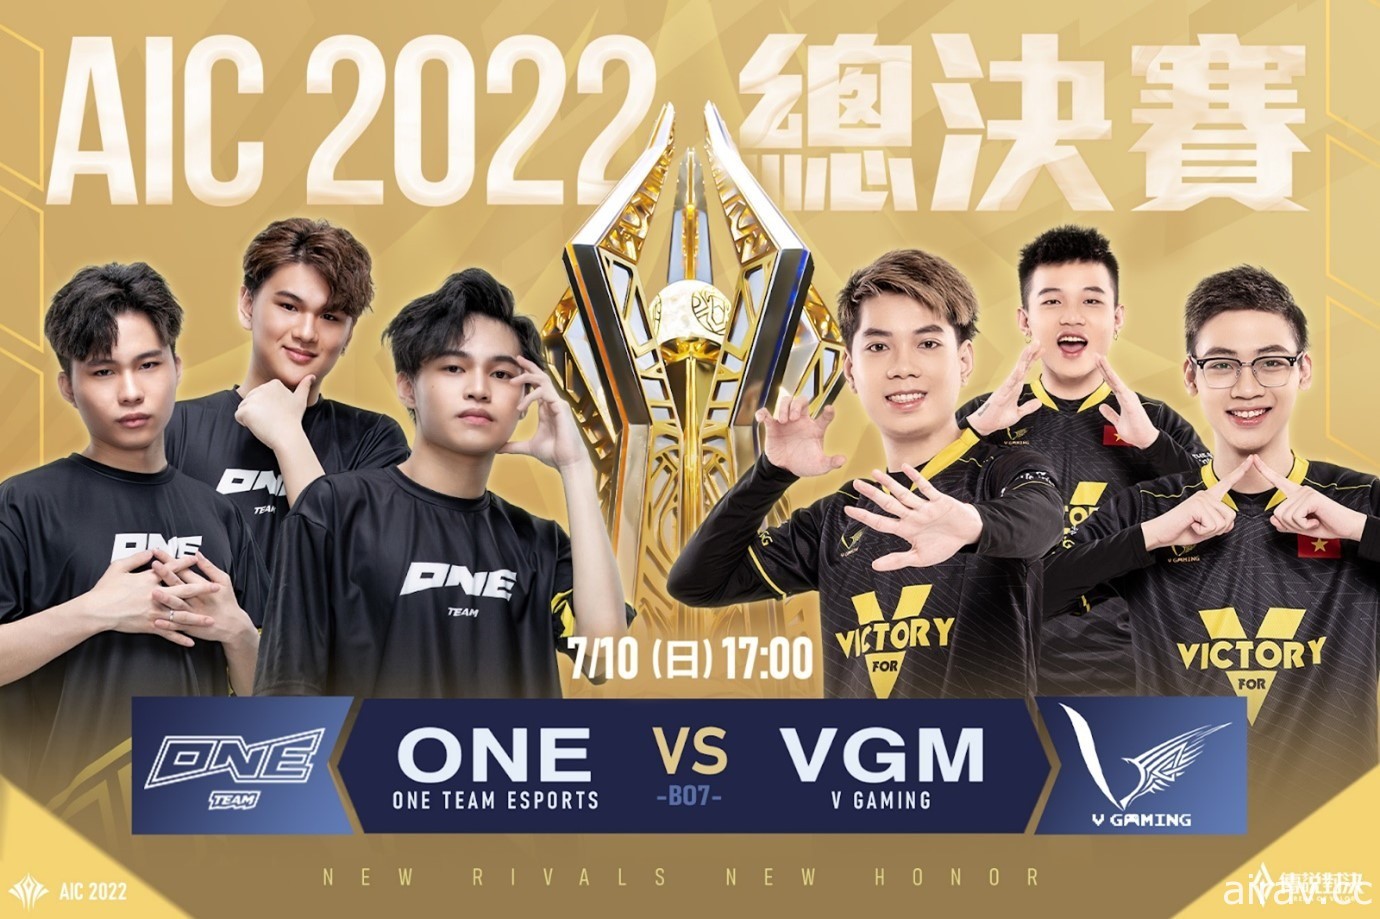 《传说对决》AIC 2022 冠军赛将于 7 月 10 日开战 由 ONE 对决 VGM 战队